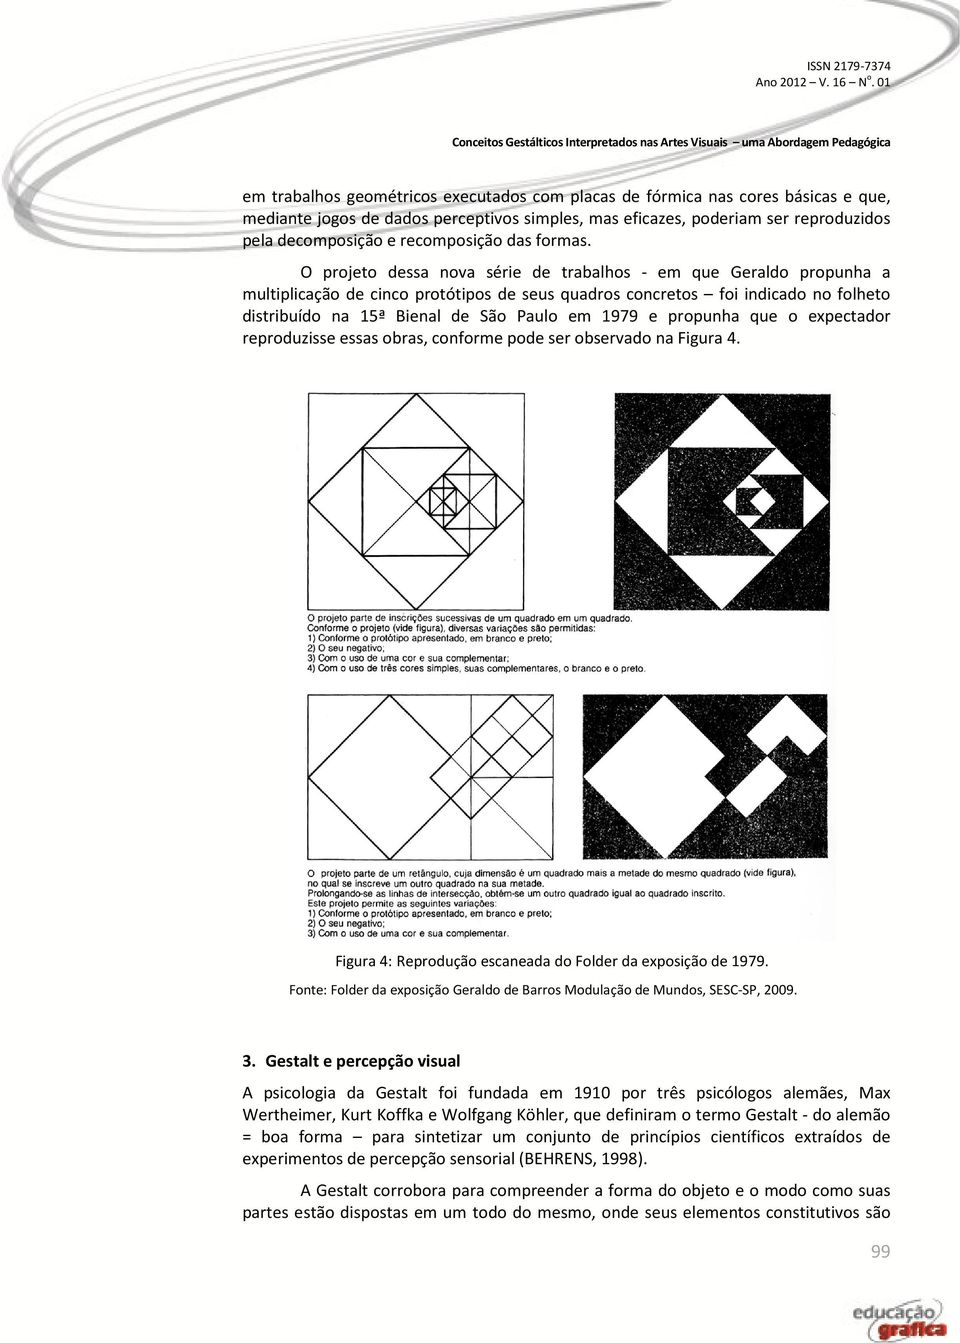 O projeto dessa nova série de trabalhos - em que Geraldo propunha a multiplicação de cinco protótipos de seus quadros concretos foi indicado no folheto distribuído na 15ª Bienal de São Paulo em 1979